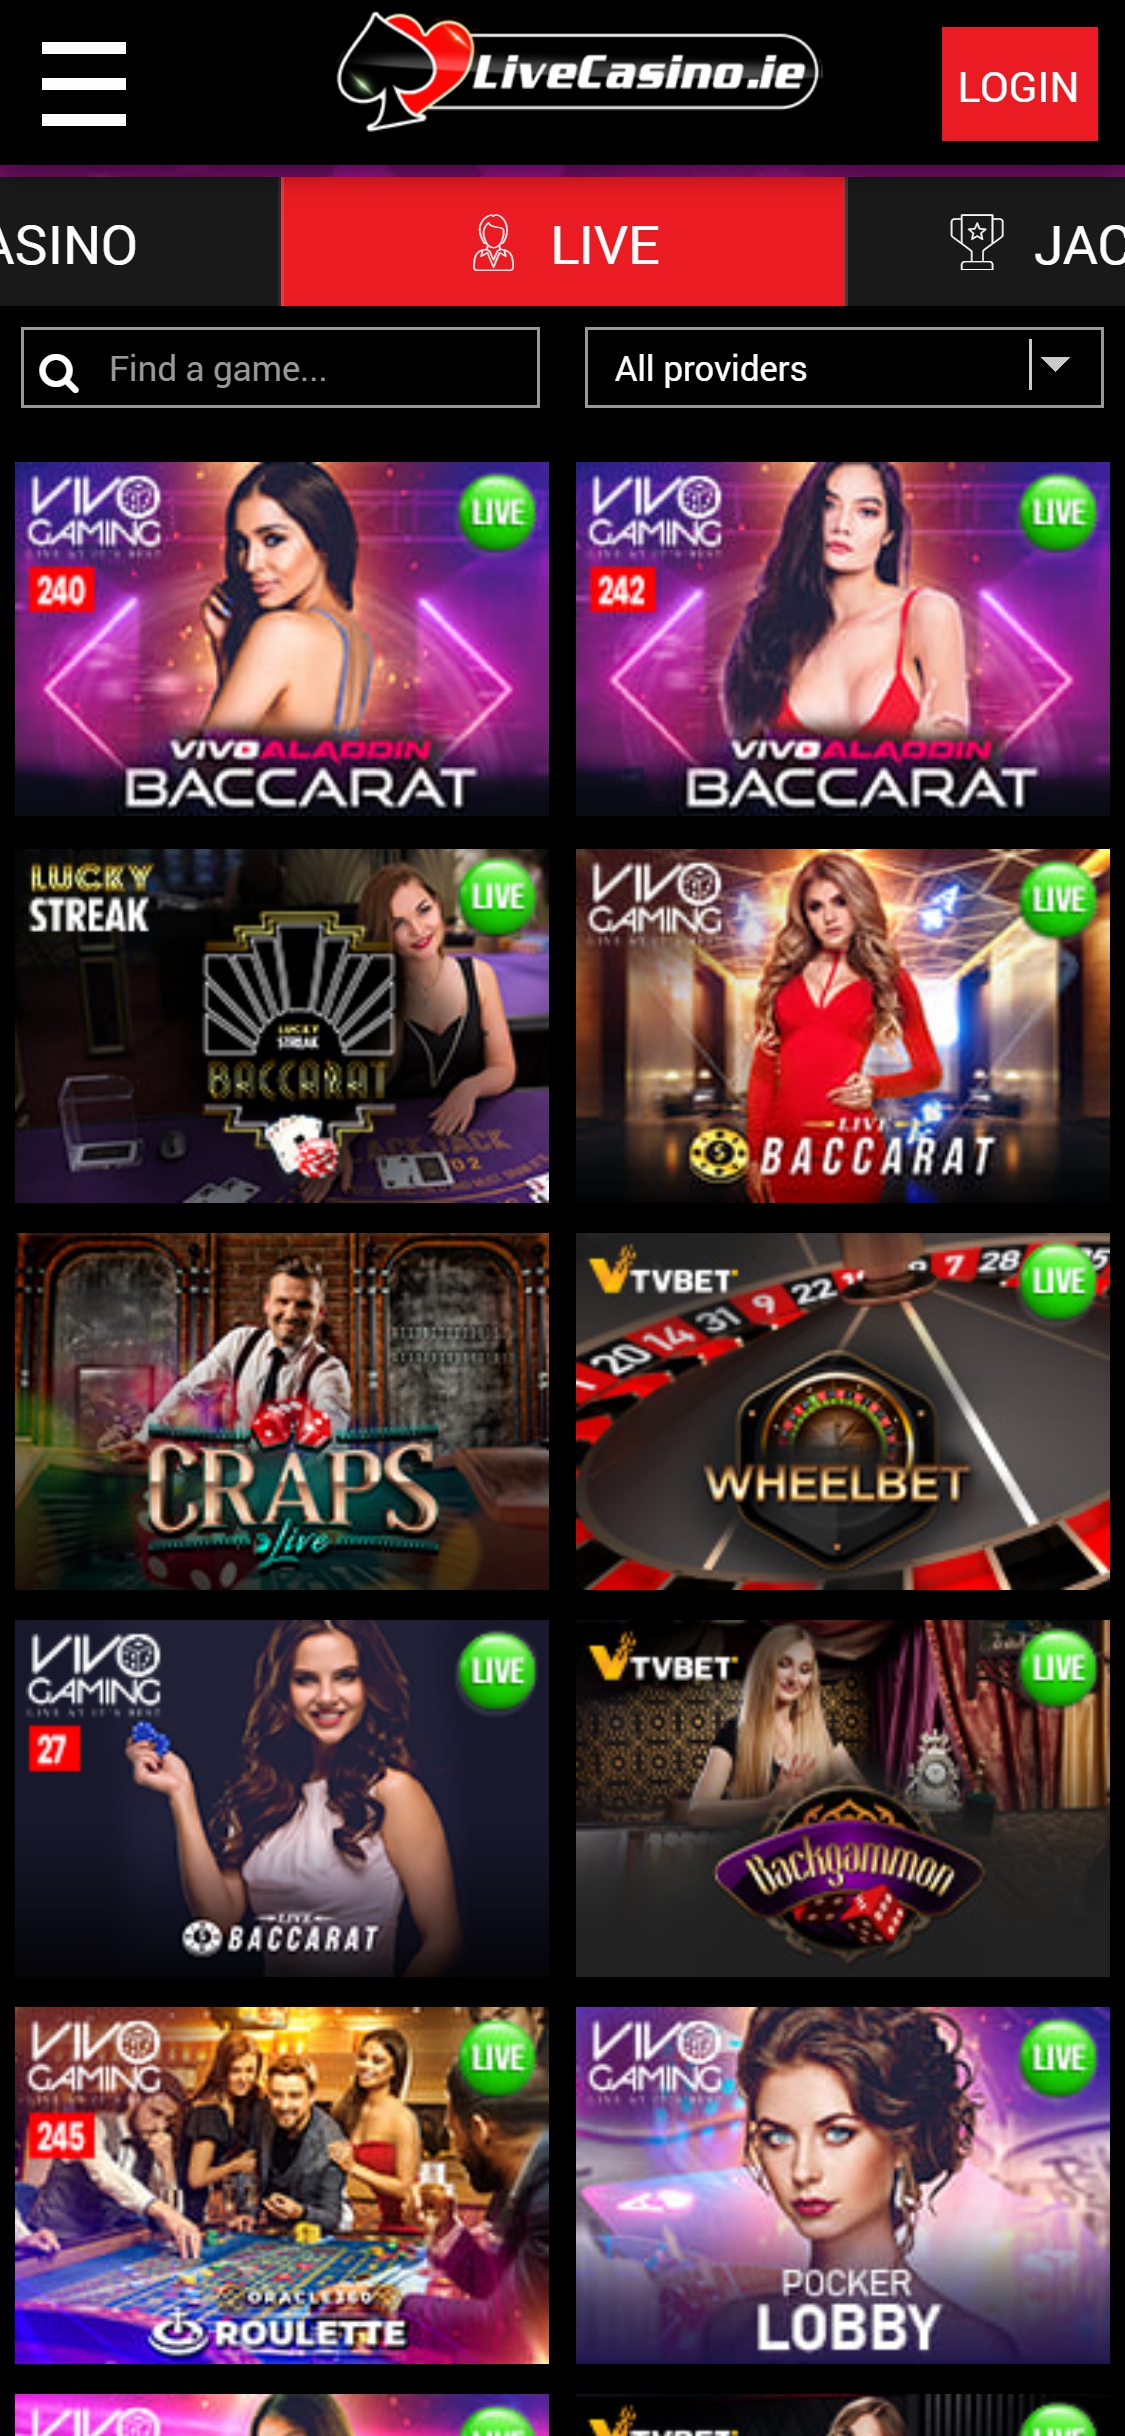 Live Casino Ireland Mobile Live Dealer Games Review